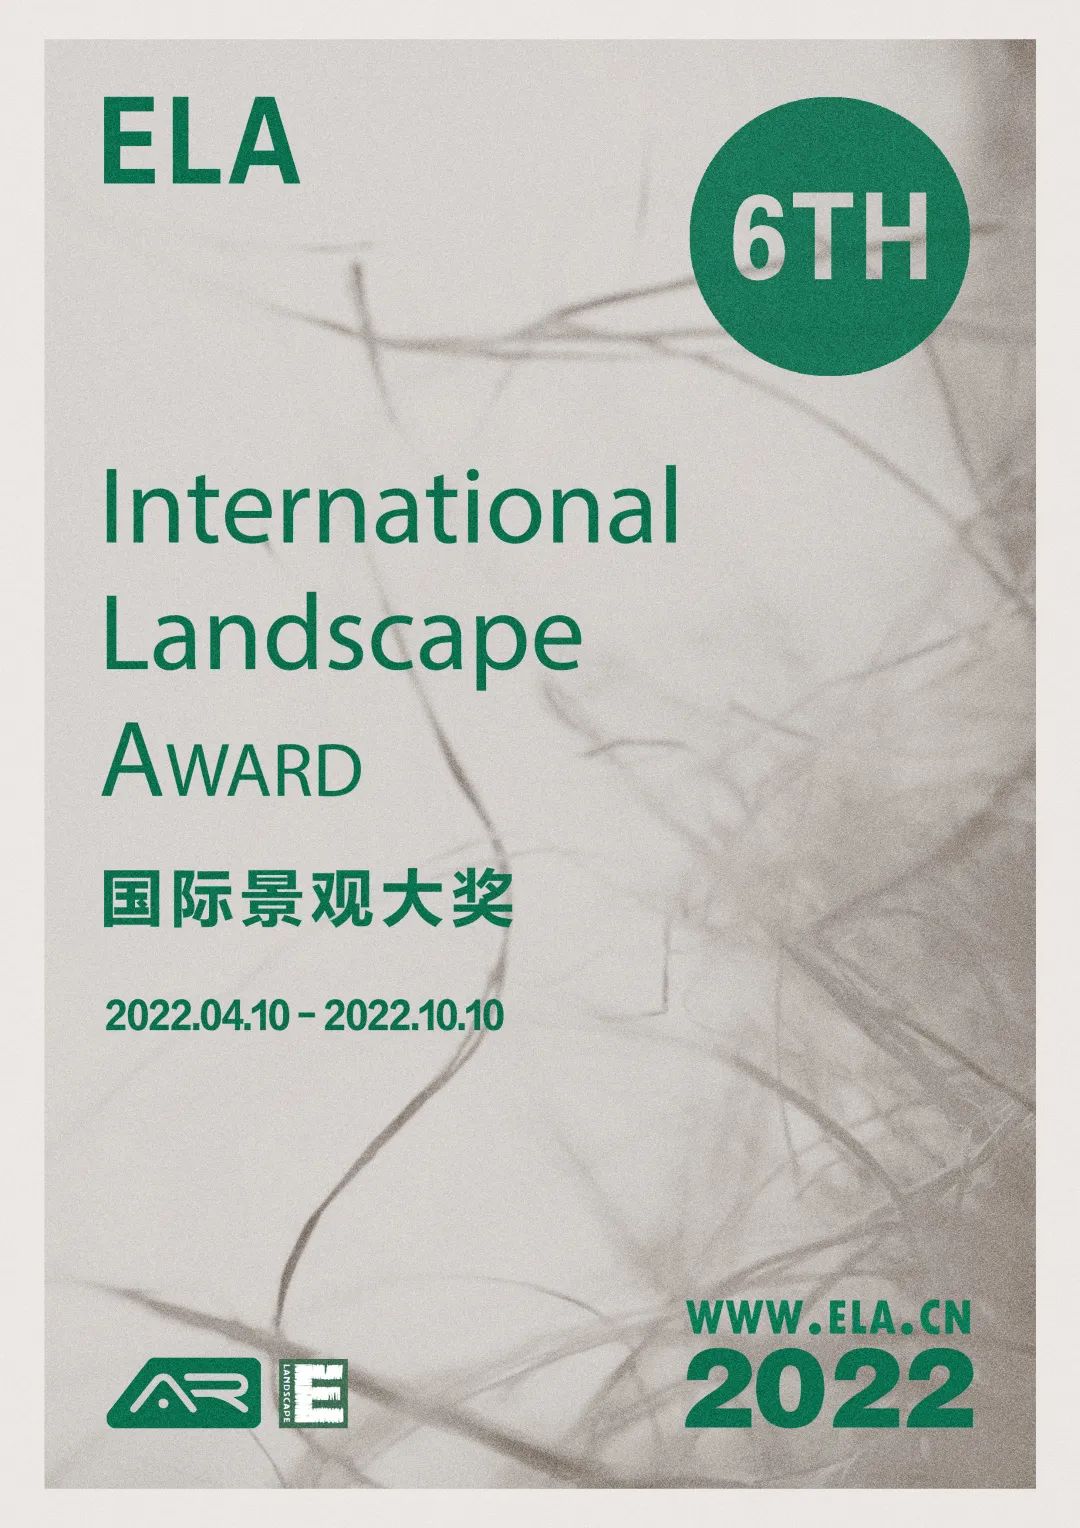 奖项申报 | 2022年第六届ELA国际景观大奖正式启动